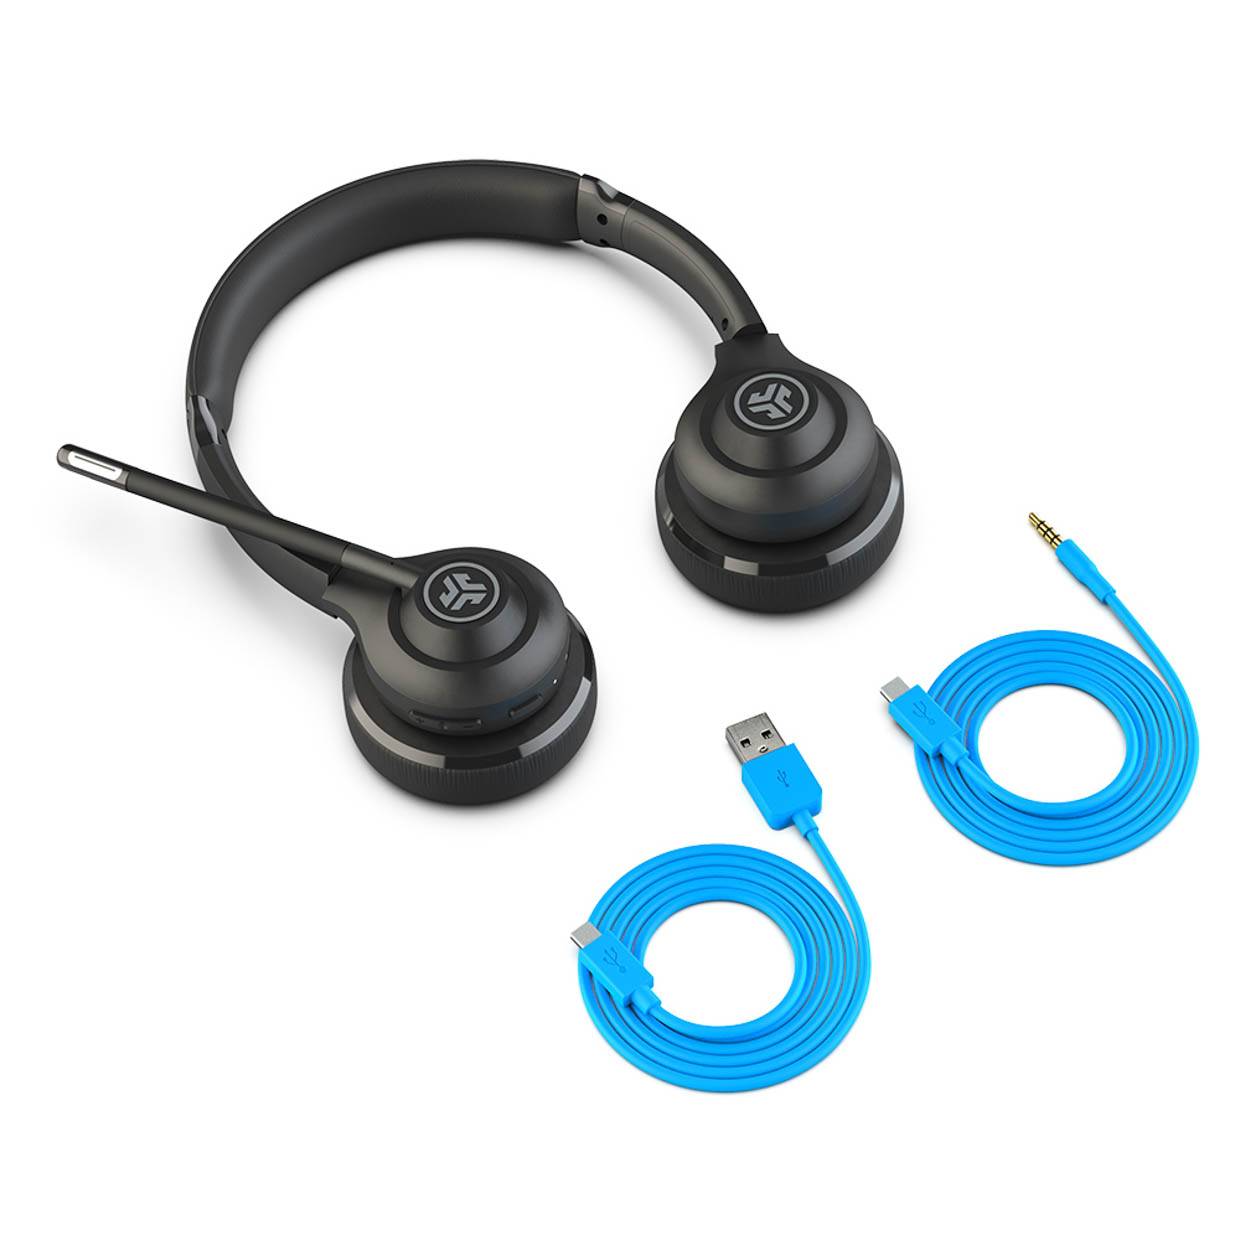 JLab GO Work Wireless On-Ear Headset